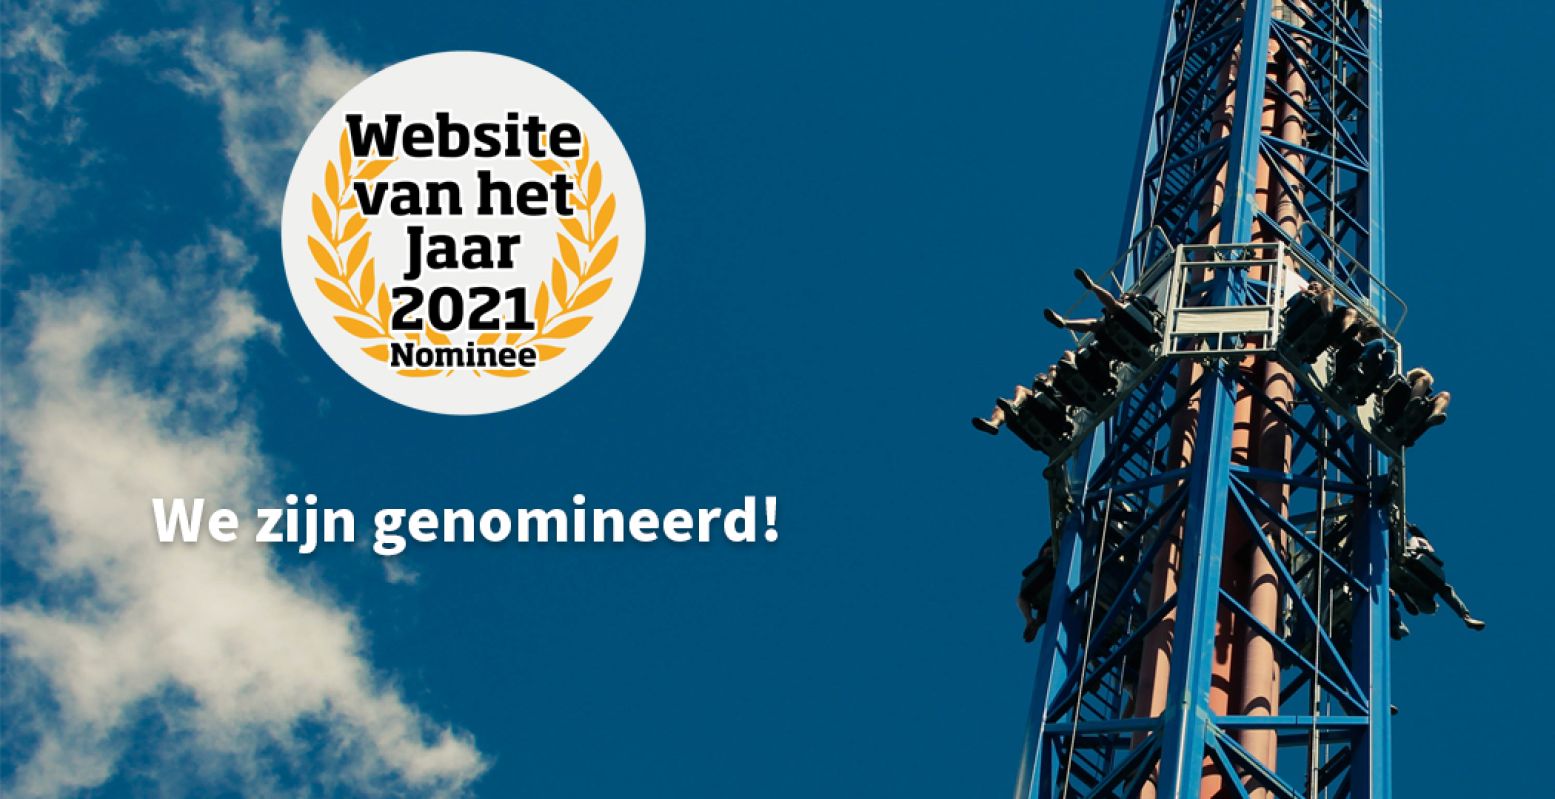 Ook in moeilijke tijden vol dagjes uit op anderhalve meter afstand was DagjeWeg.NL relevant. DagjeWeg.NL is genomineerd voor Website van het Jaar!  Stem op ons in de categorie Vrije Tijd . Foto: DagjeWeg.NL.